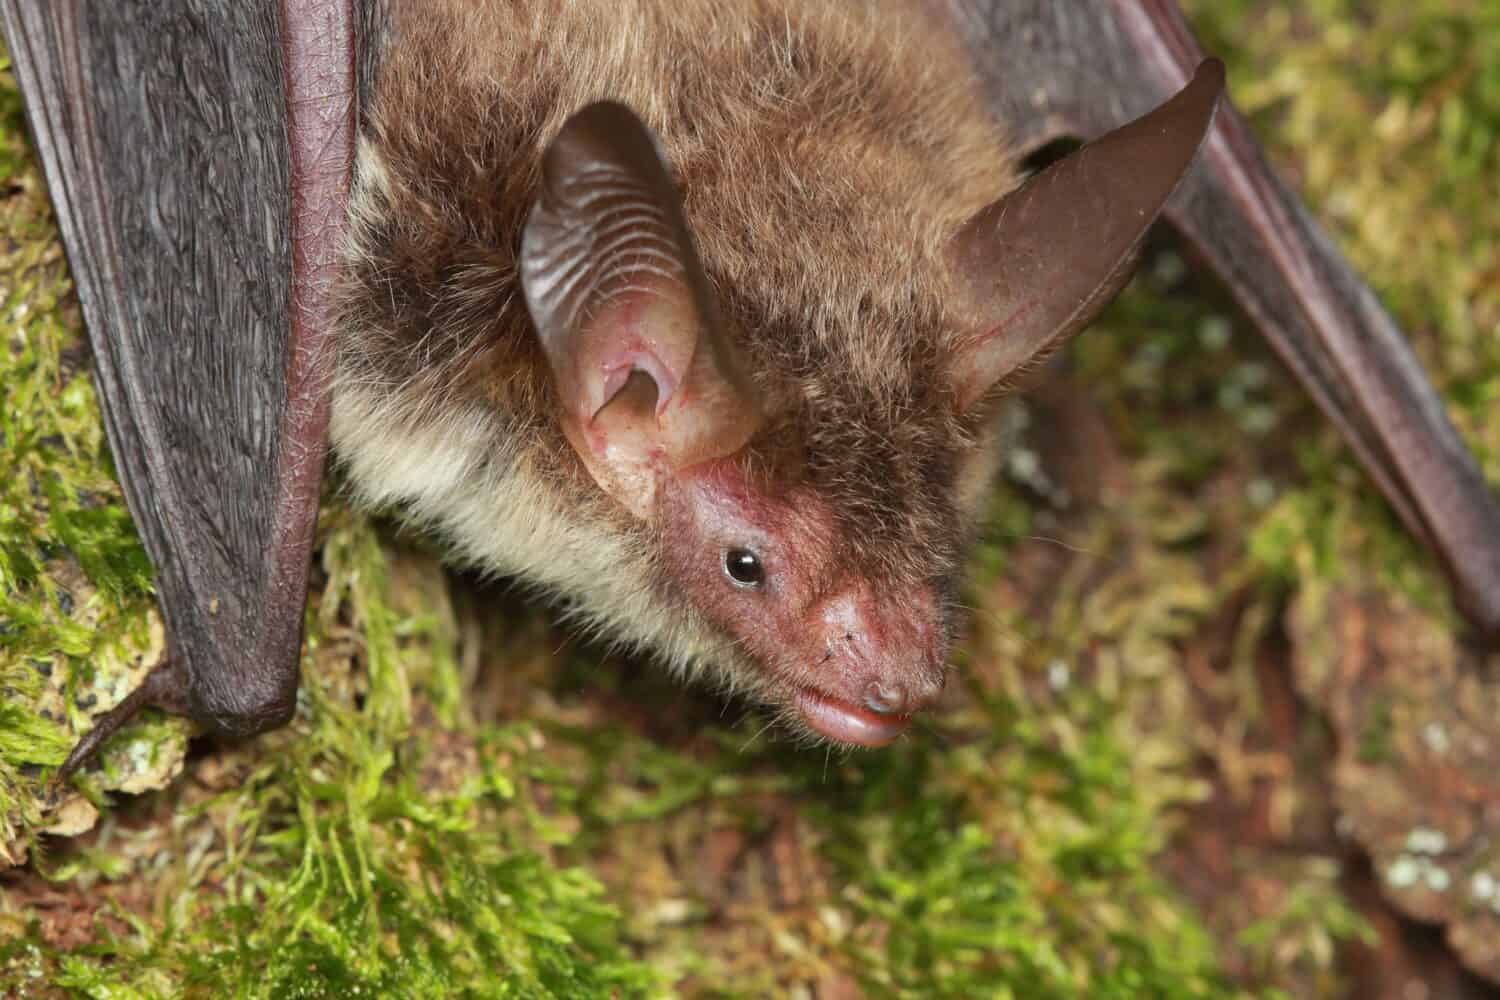 Bechstein's bat(Myotis bechsteinii) portrait in natural habitat